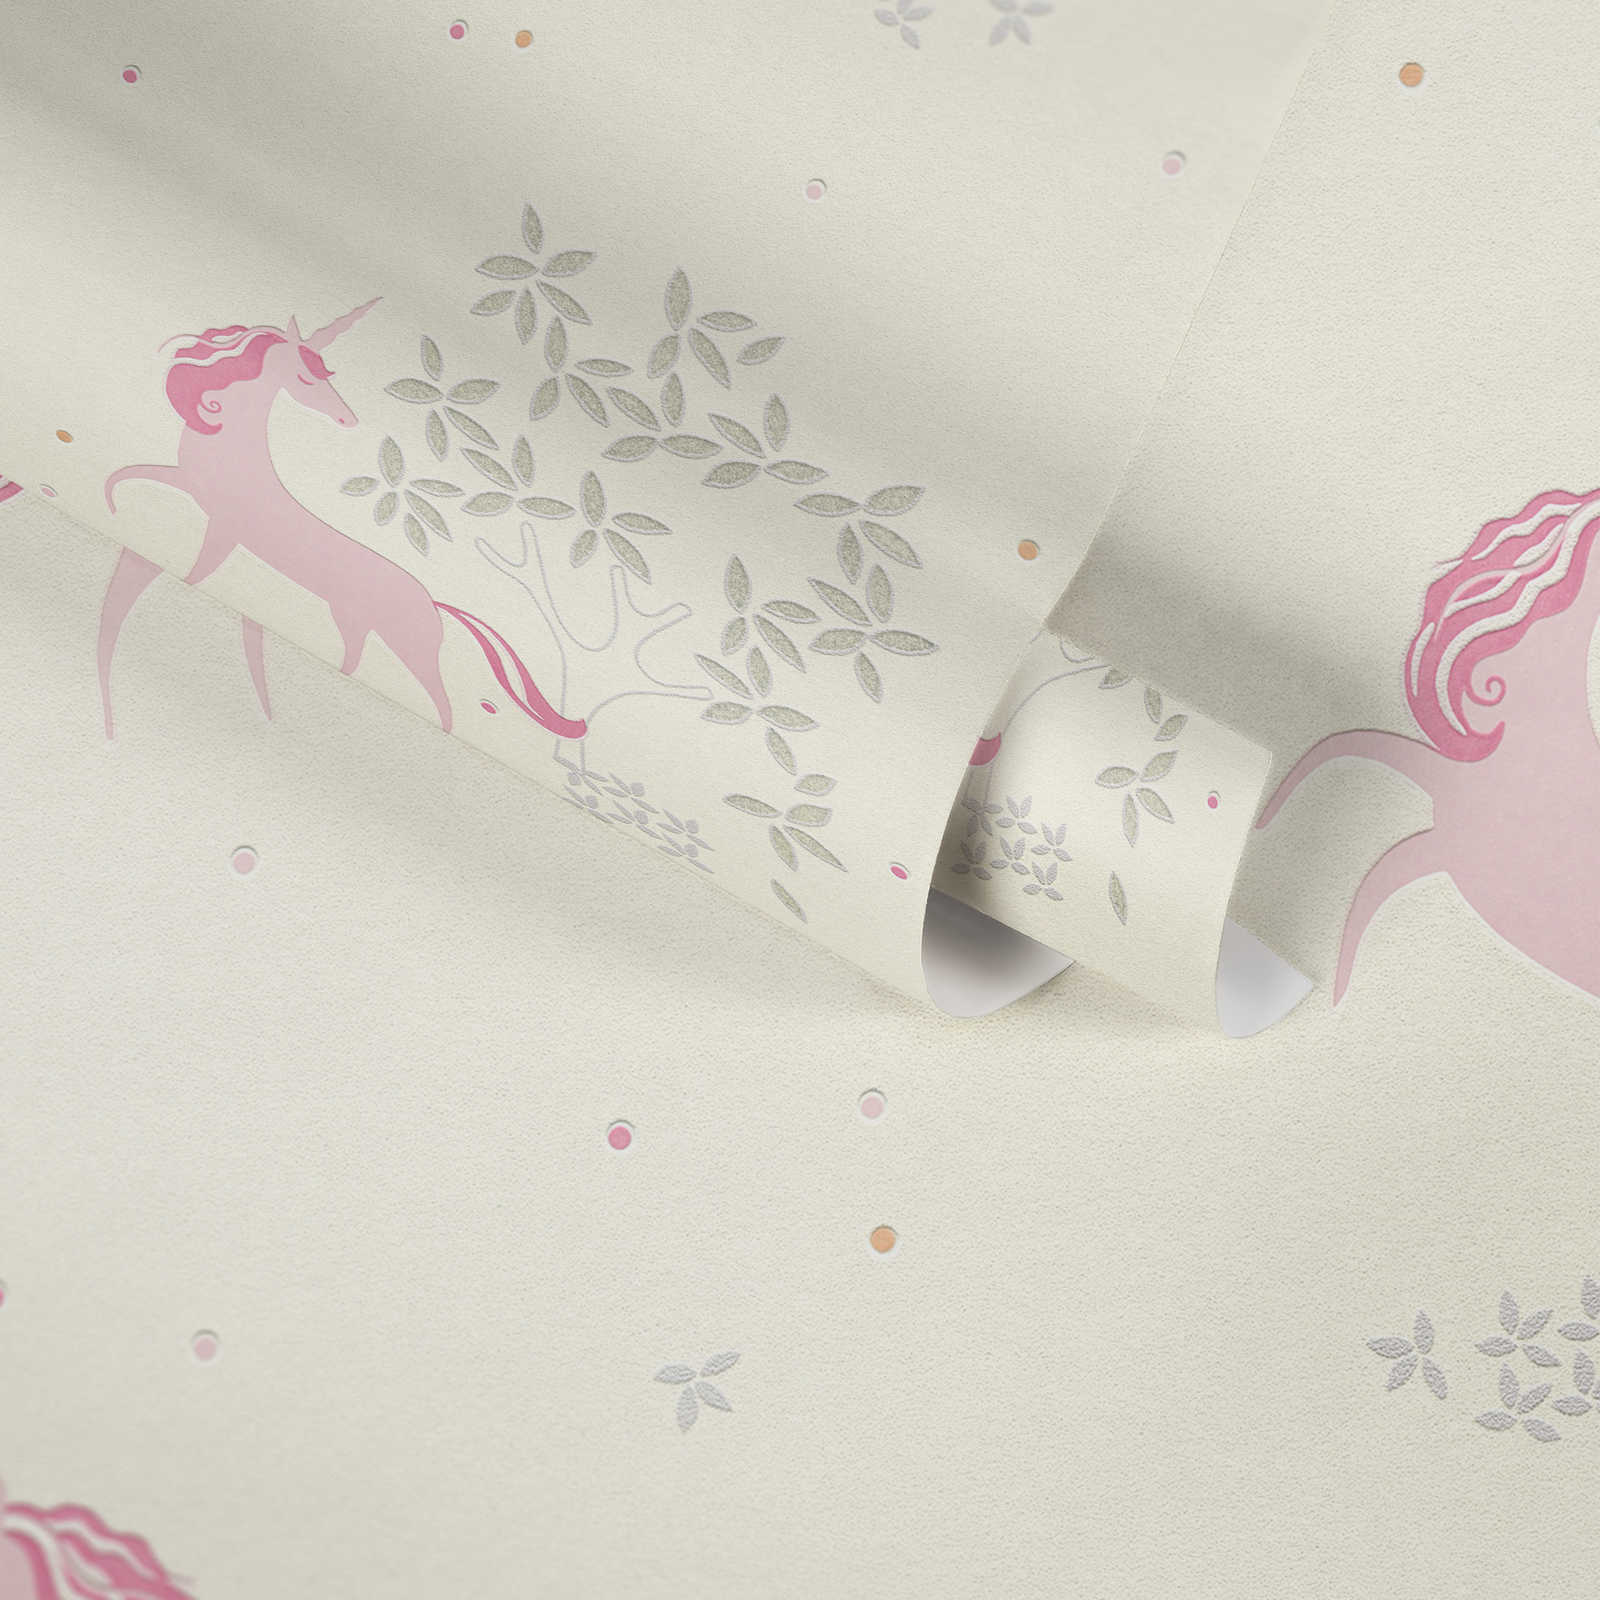             Carta da parati in tessuto non tessuto tinta unicacorno con pois e glitter argento - rosa, grigio
        